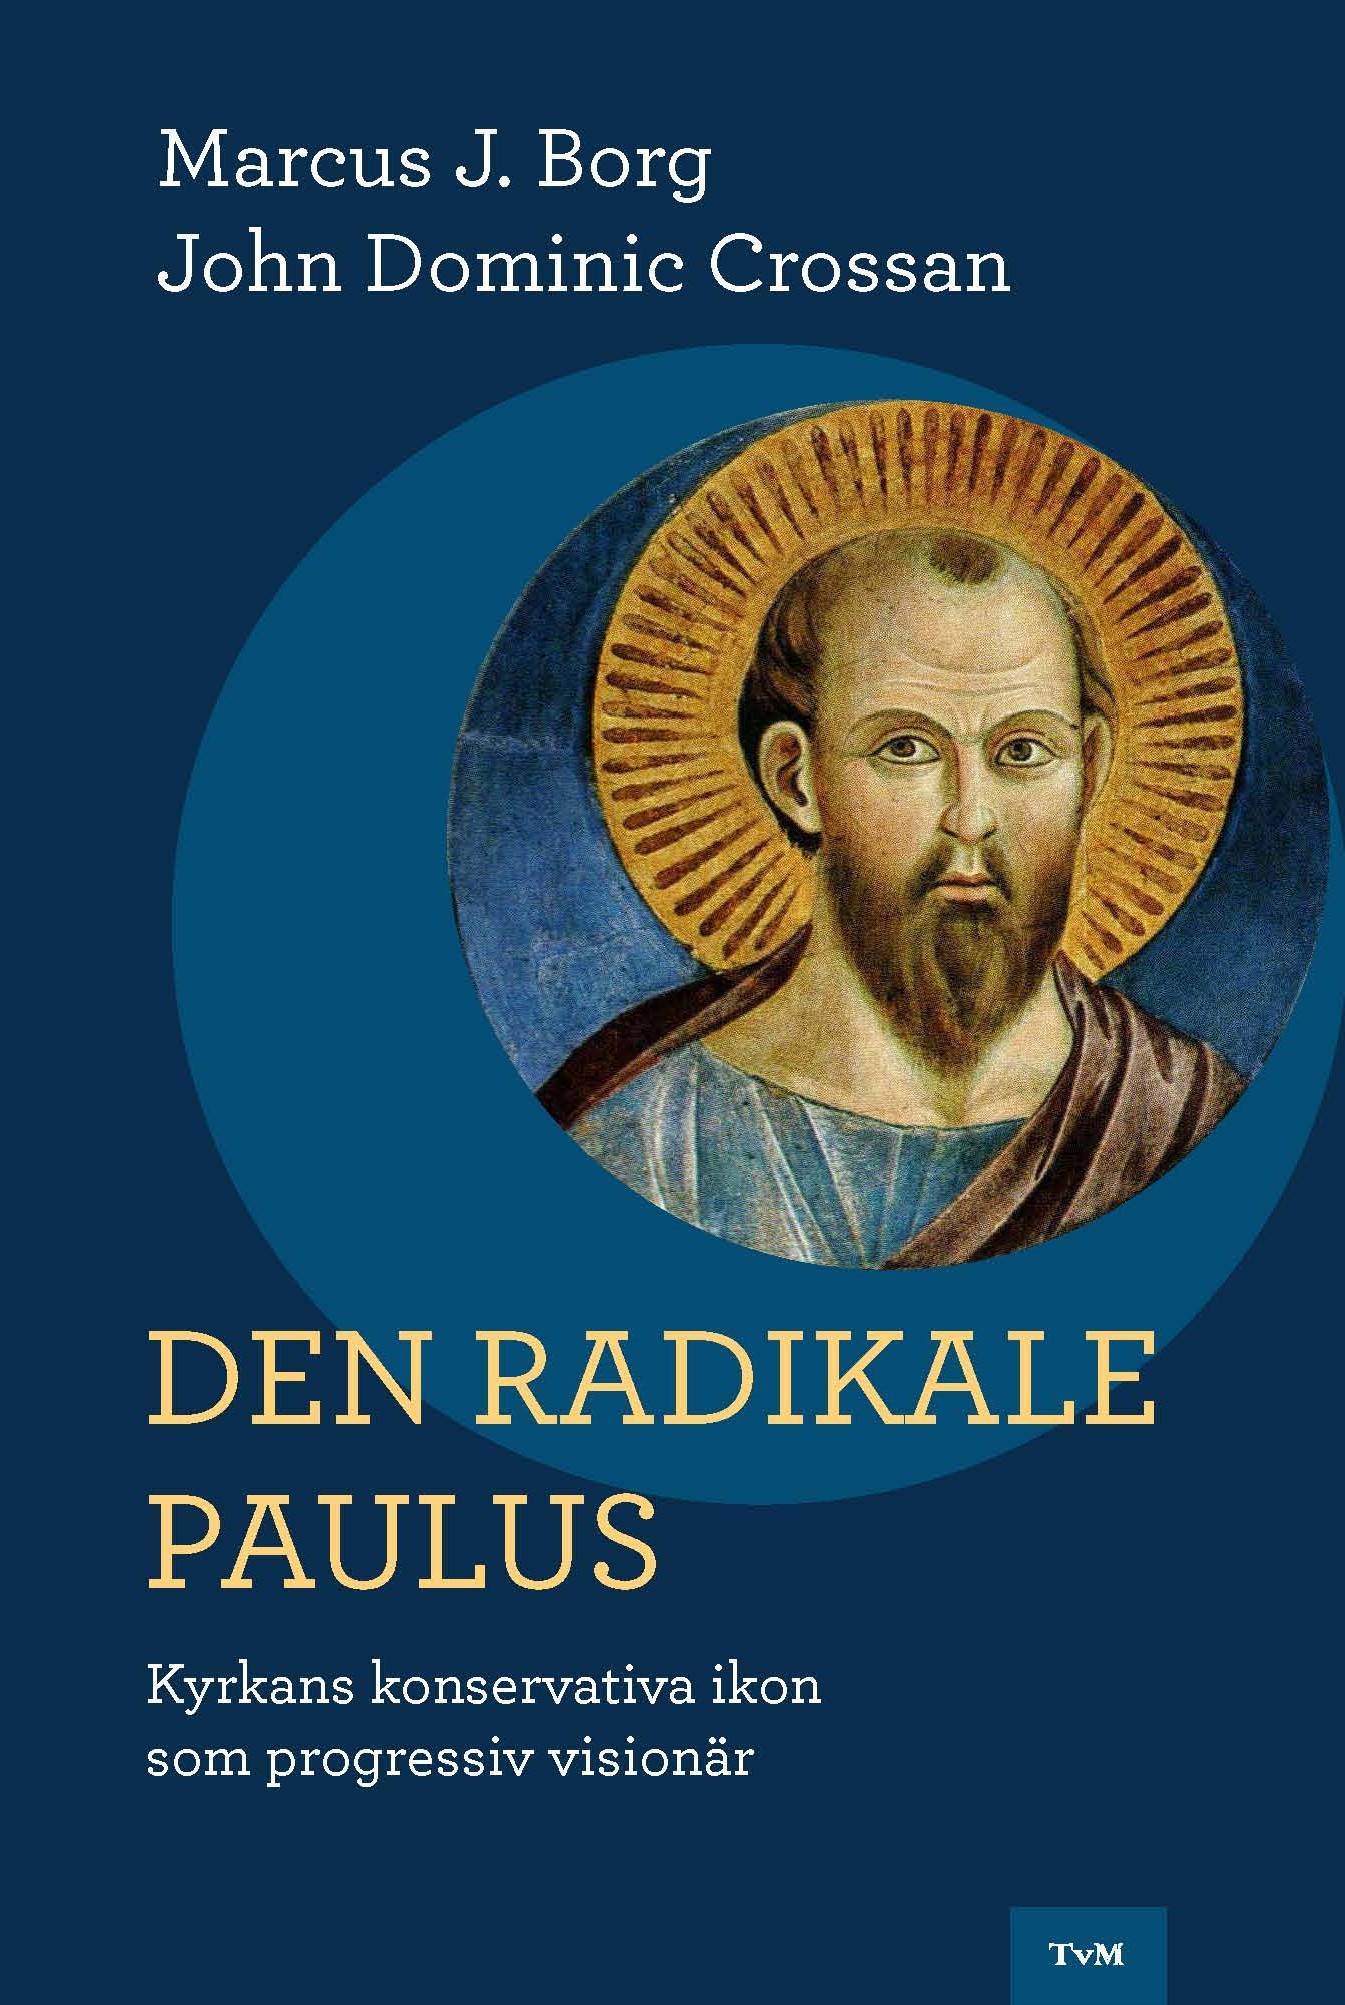 Den radikale Paulus : kyrkans konservativa ikon som progressiv visionär